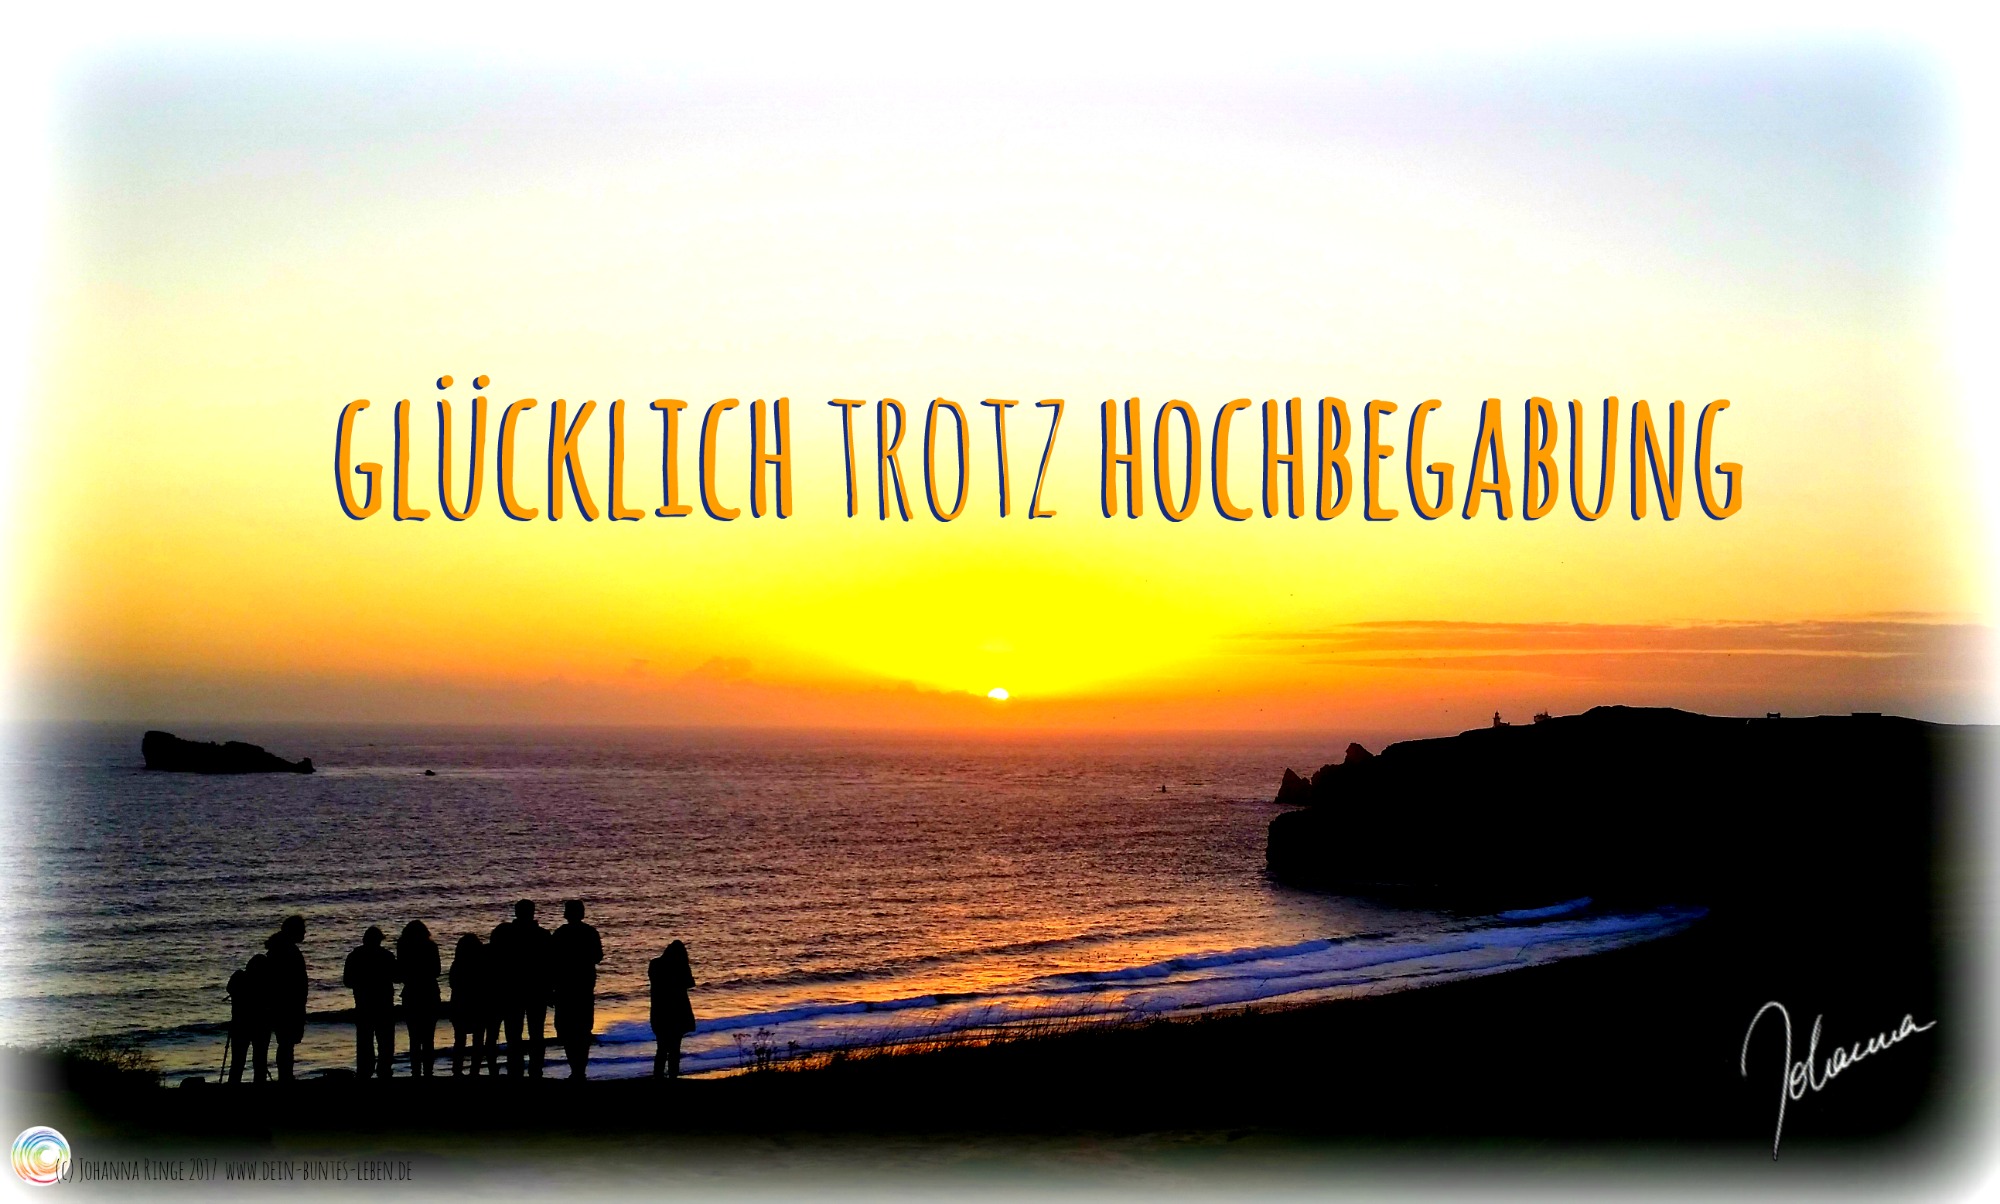 Schriftzug "Glücklich trotz Hochbegabung" auf Foto von Sonnenuntergang am Meer (c) Johanna Ringe 2017 www.dein-buntes-leben.de